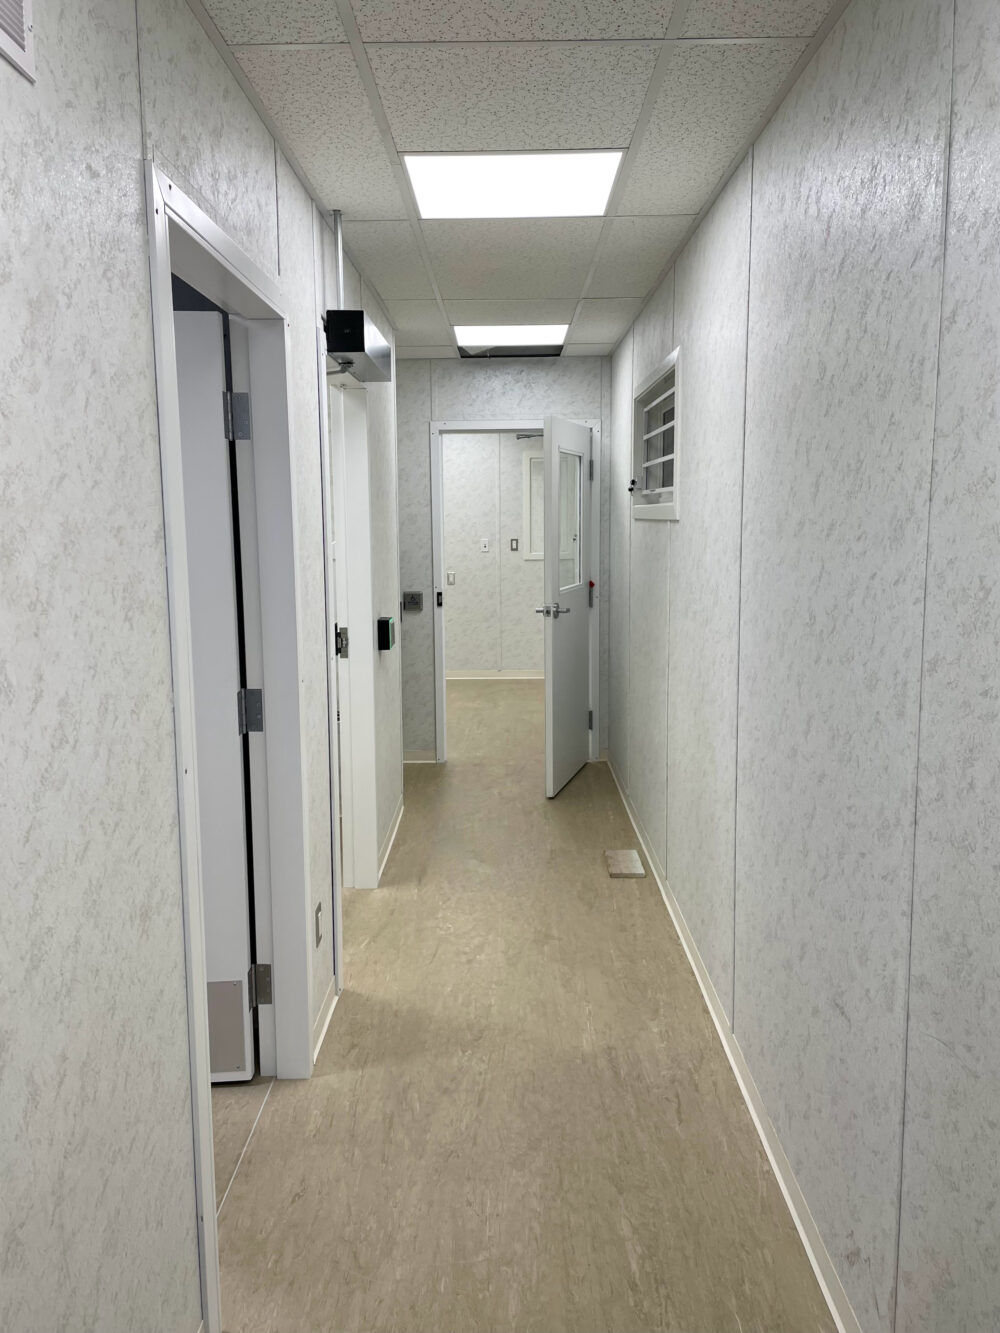 Office Hallway in Work Site Trailer